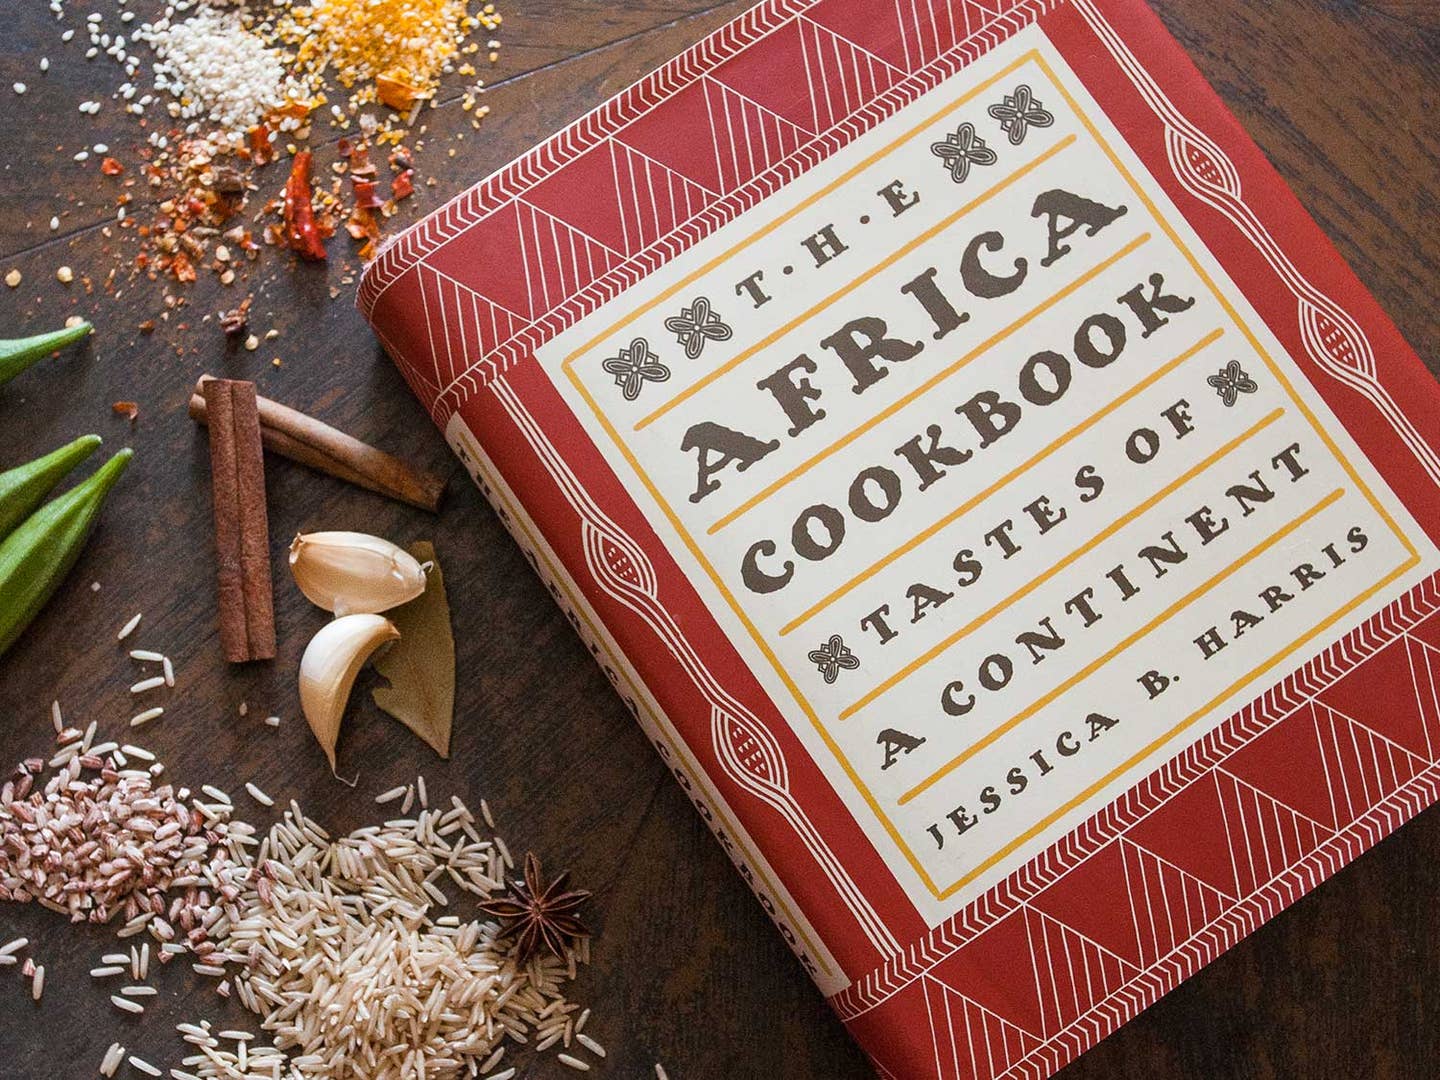 March’s Cookbook Club Pick: The Africa Cookbook